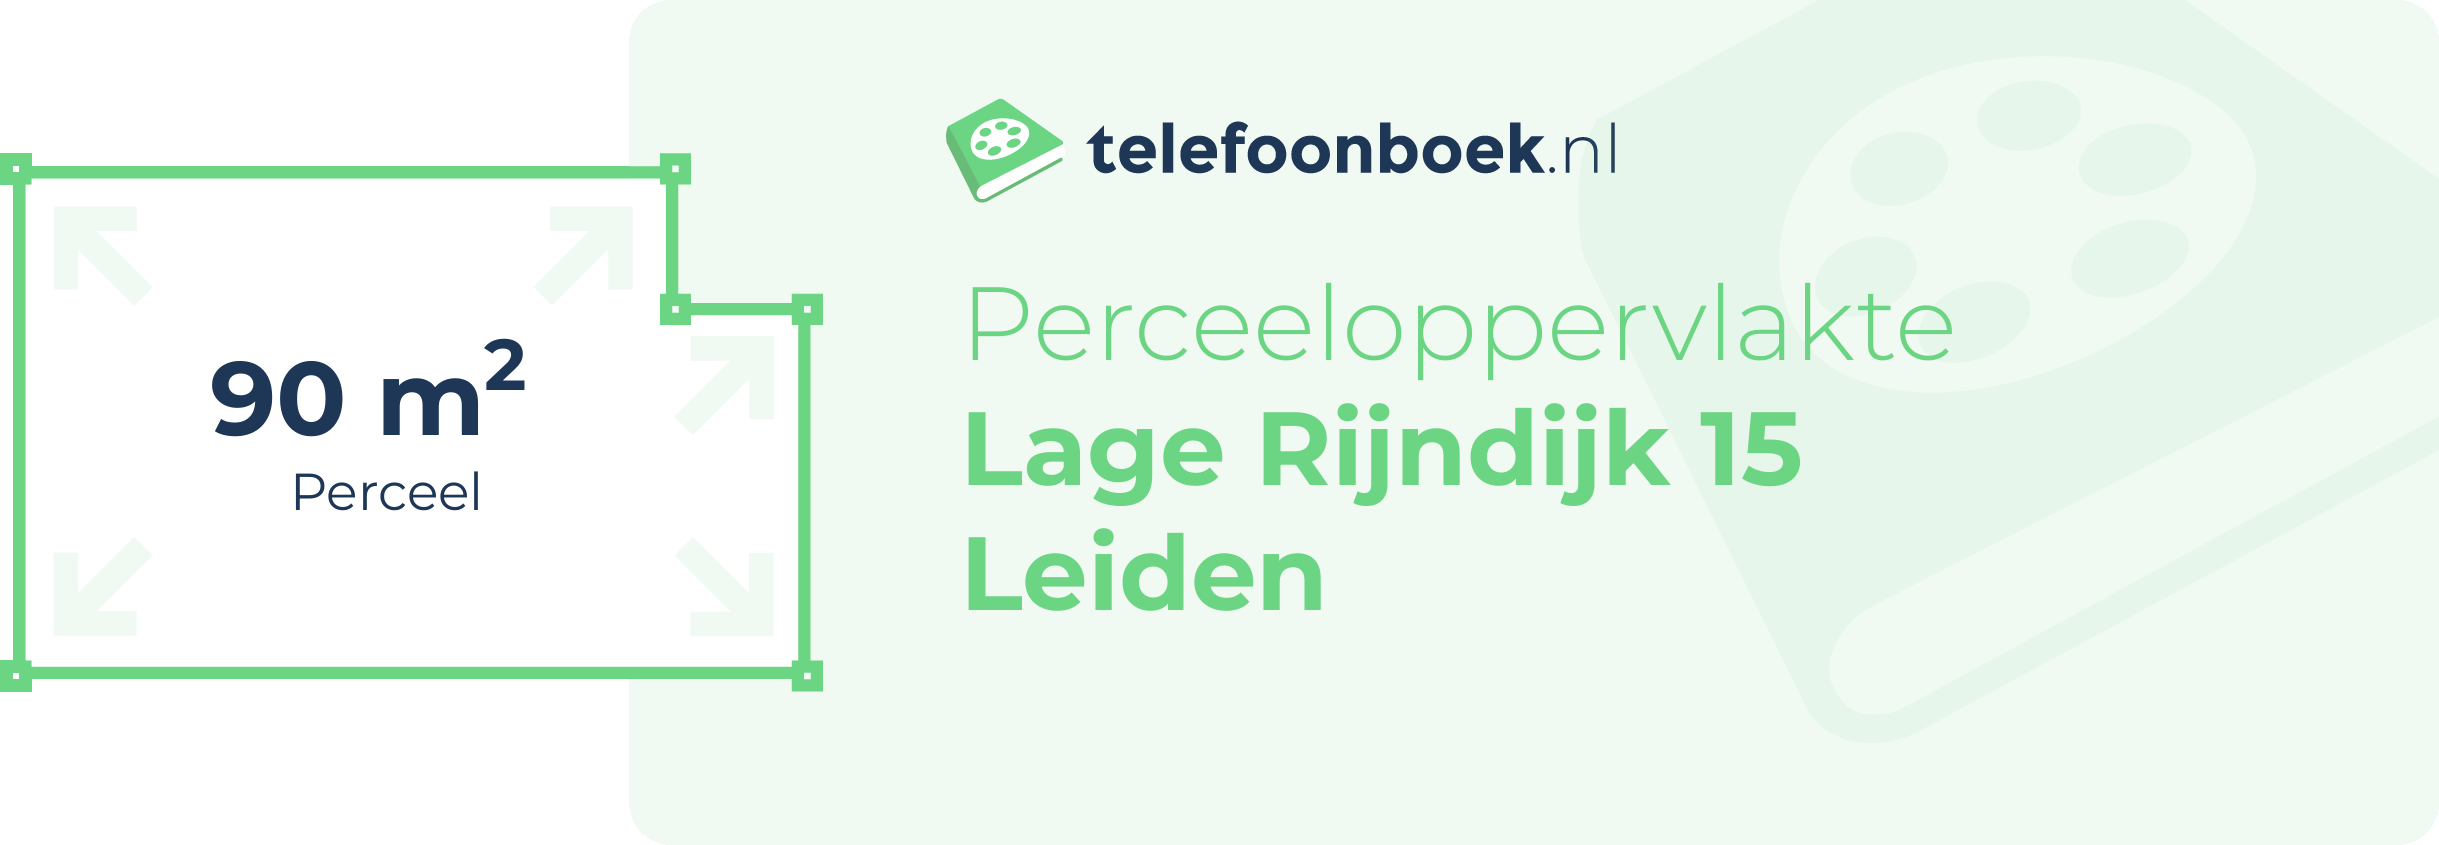 Perceeloppervlakte Lage Rijndijk 15 Leiden